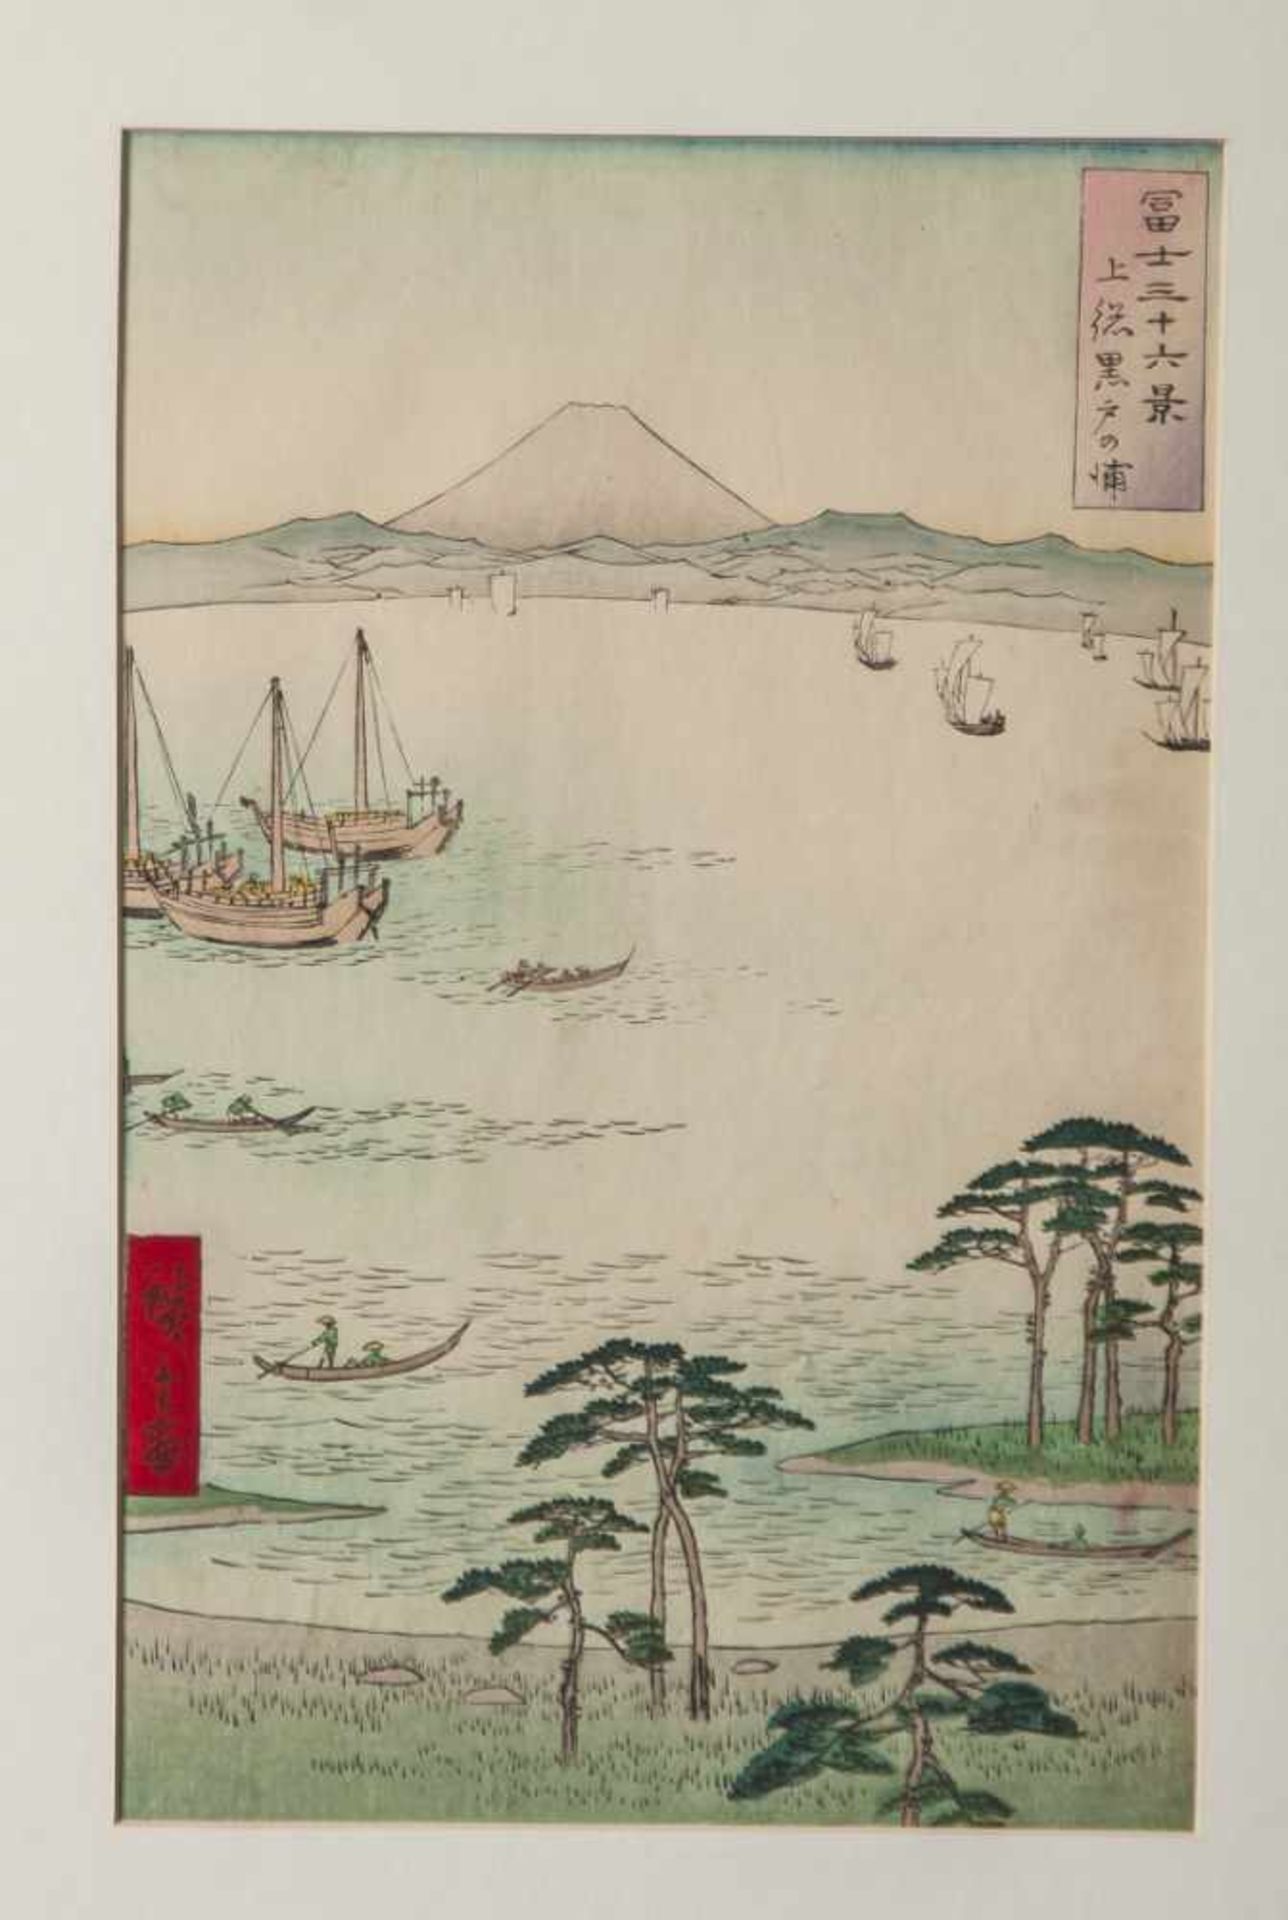 Hiroshige, Utagawa (1797-1858), Kazusa, Kuroto-no ura, aus der Serie: Fuji sanjurokkei (